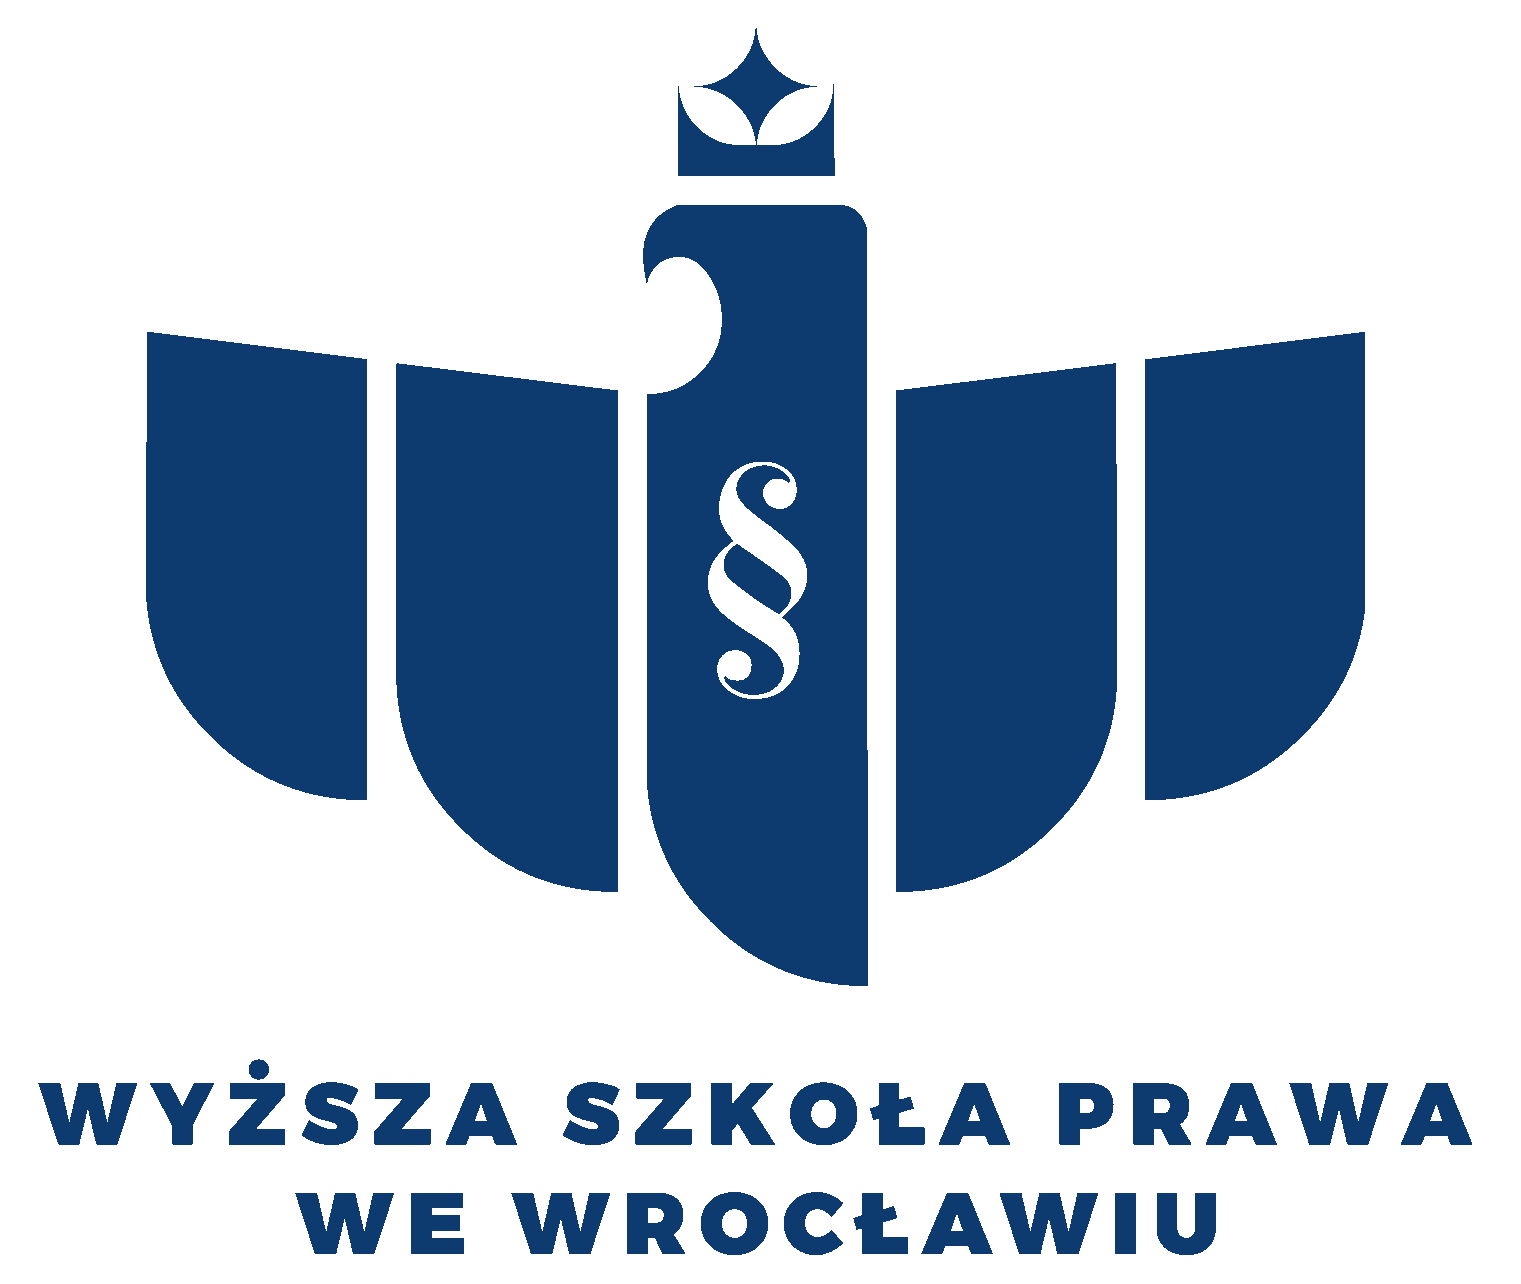 Wyższa Szkoła Prawa (WSP) we Wrocławiu